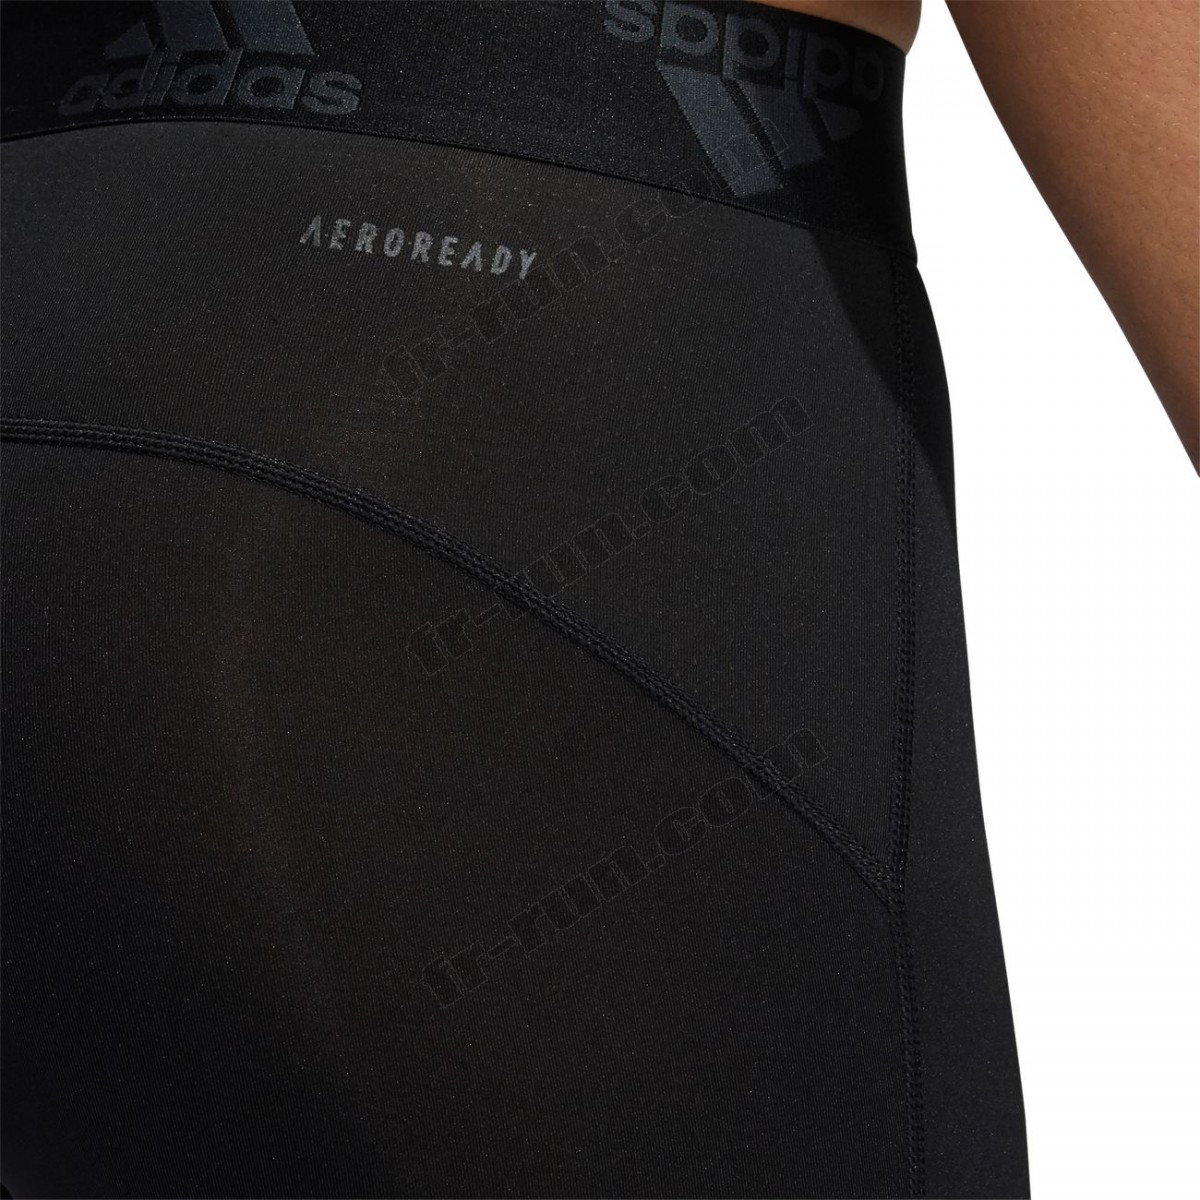 Adidas/Course à pied homme ADIDAS Cycliste adidas Techfit ◇◇◇ Pas Cher Du Tout - -22